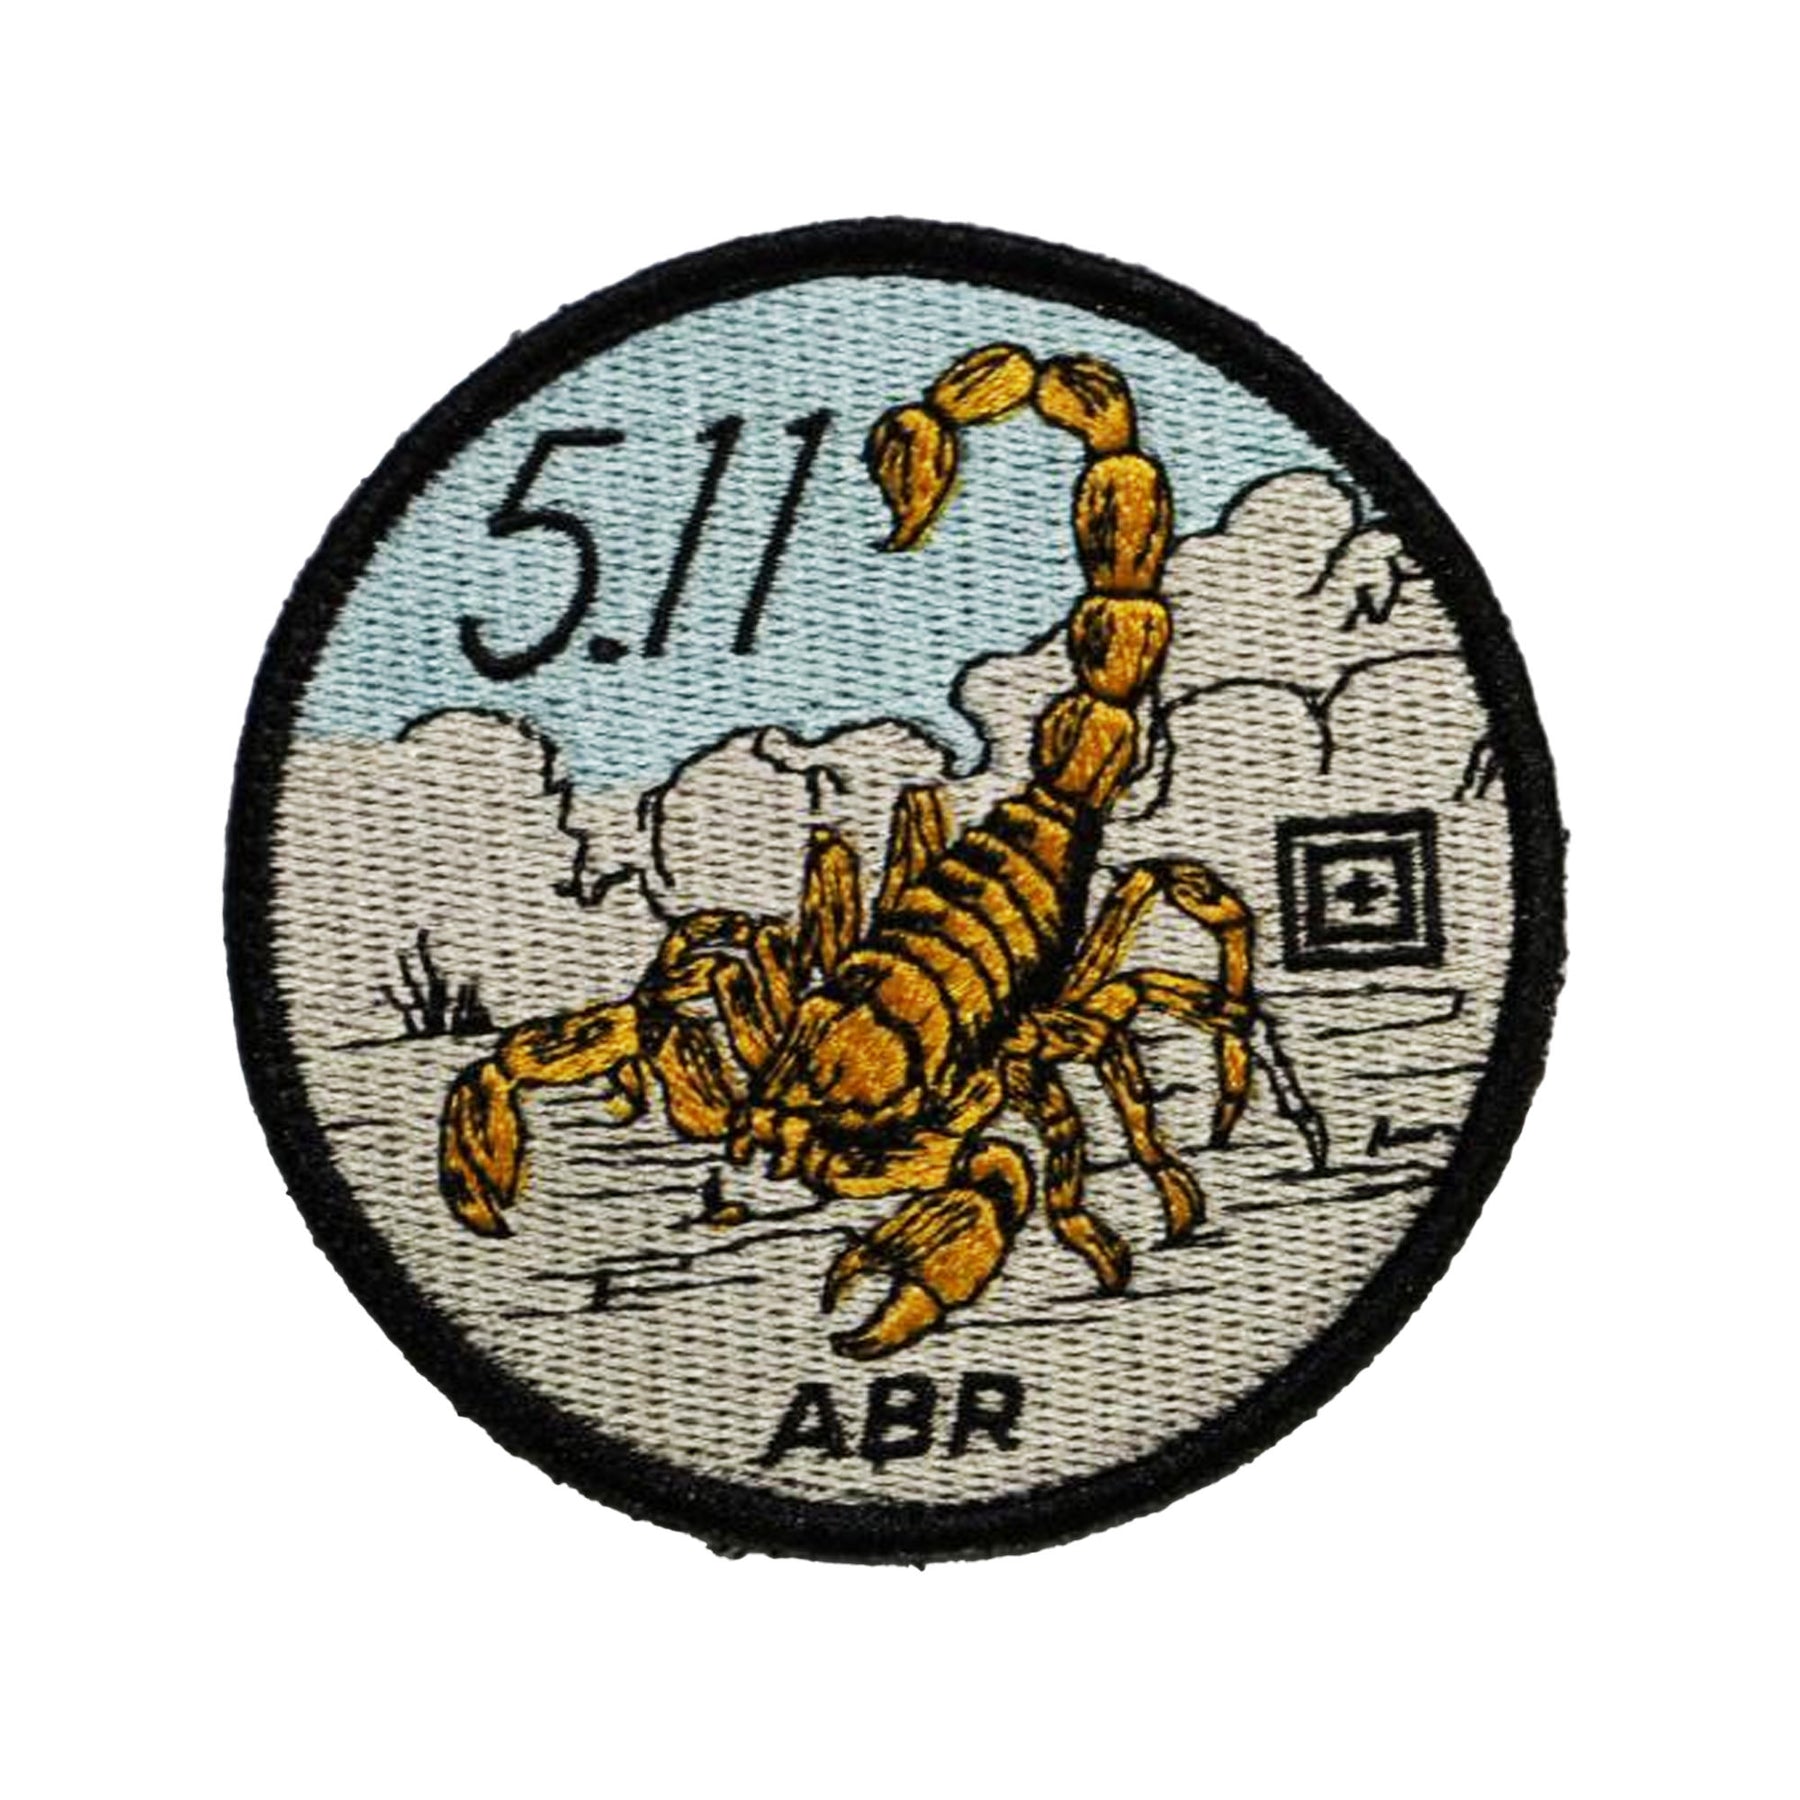 5.11 scorpions sting patch